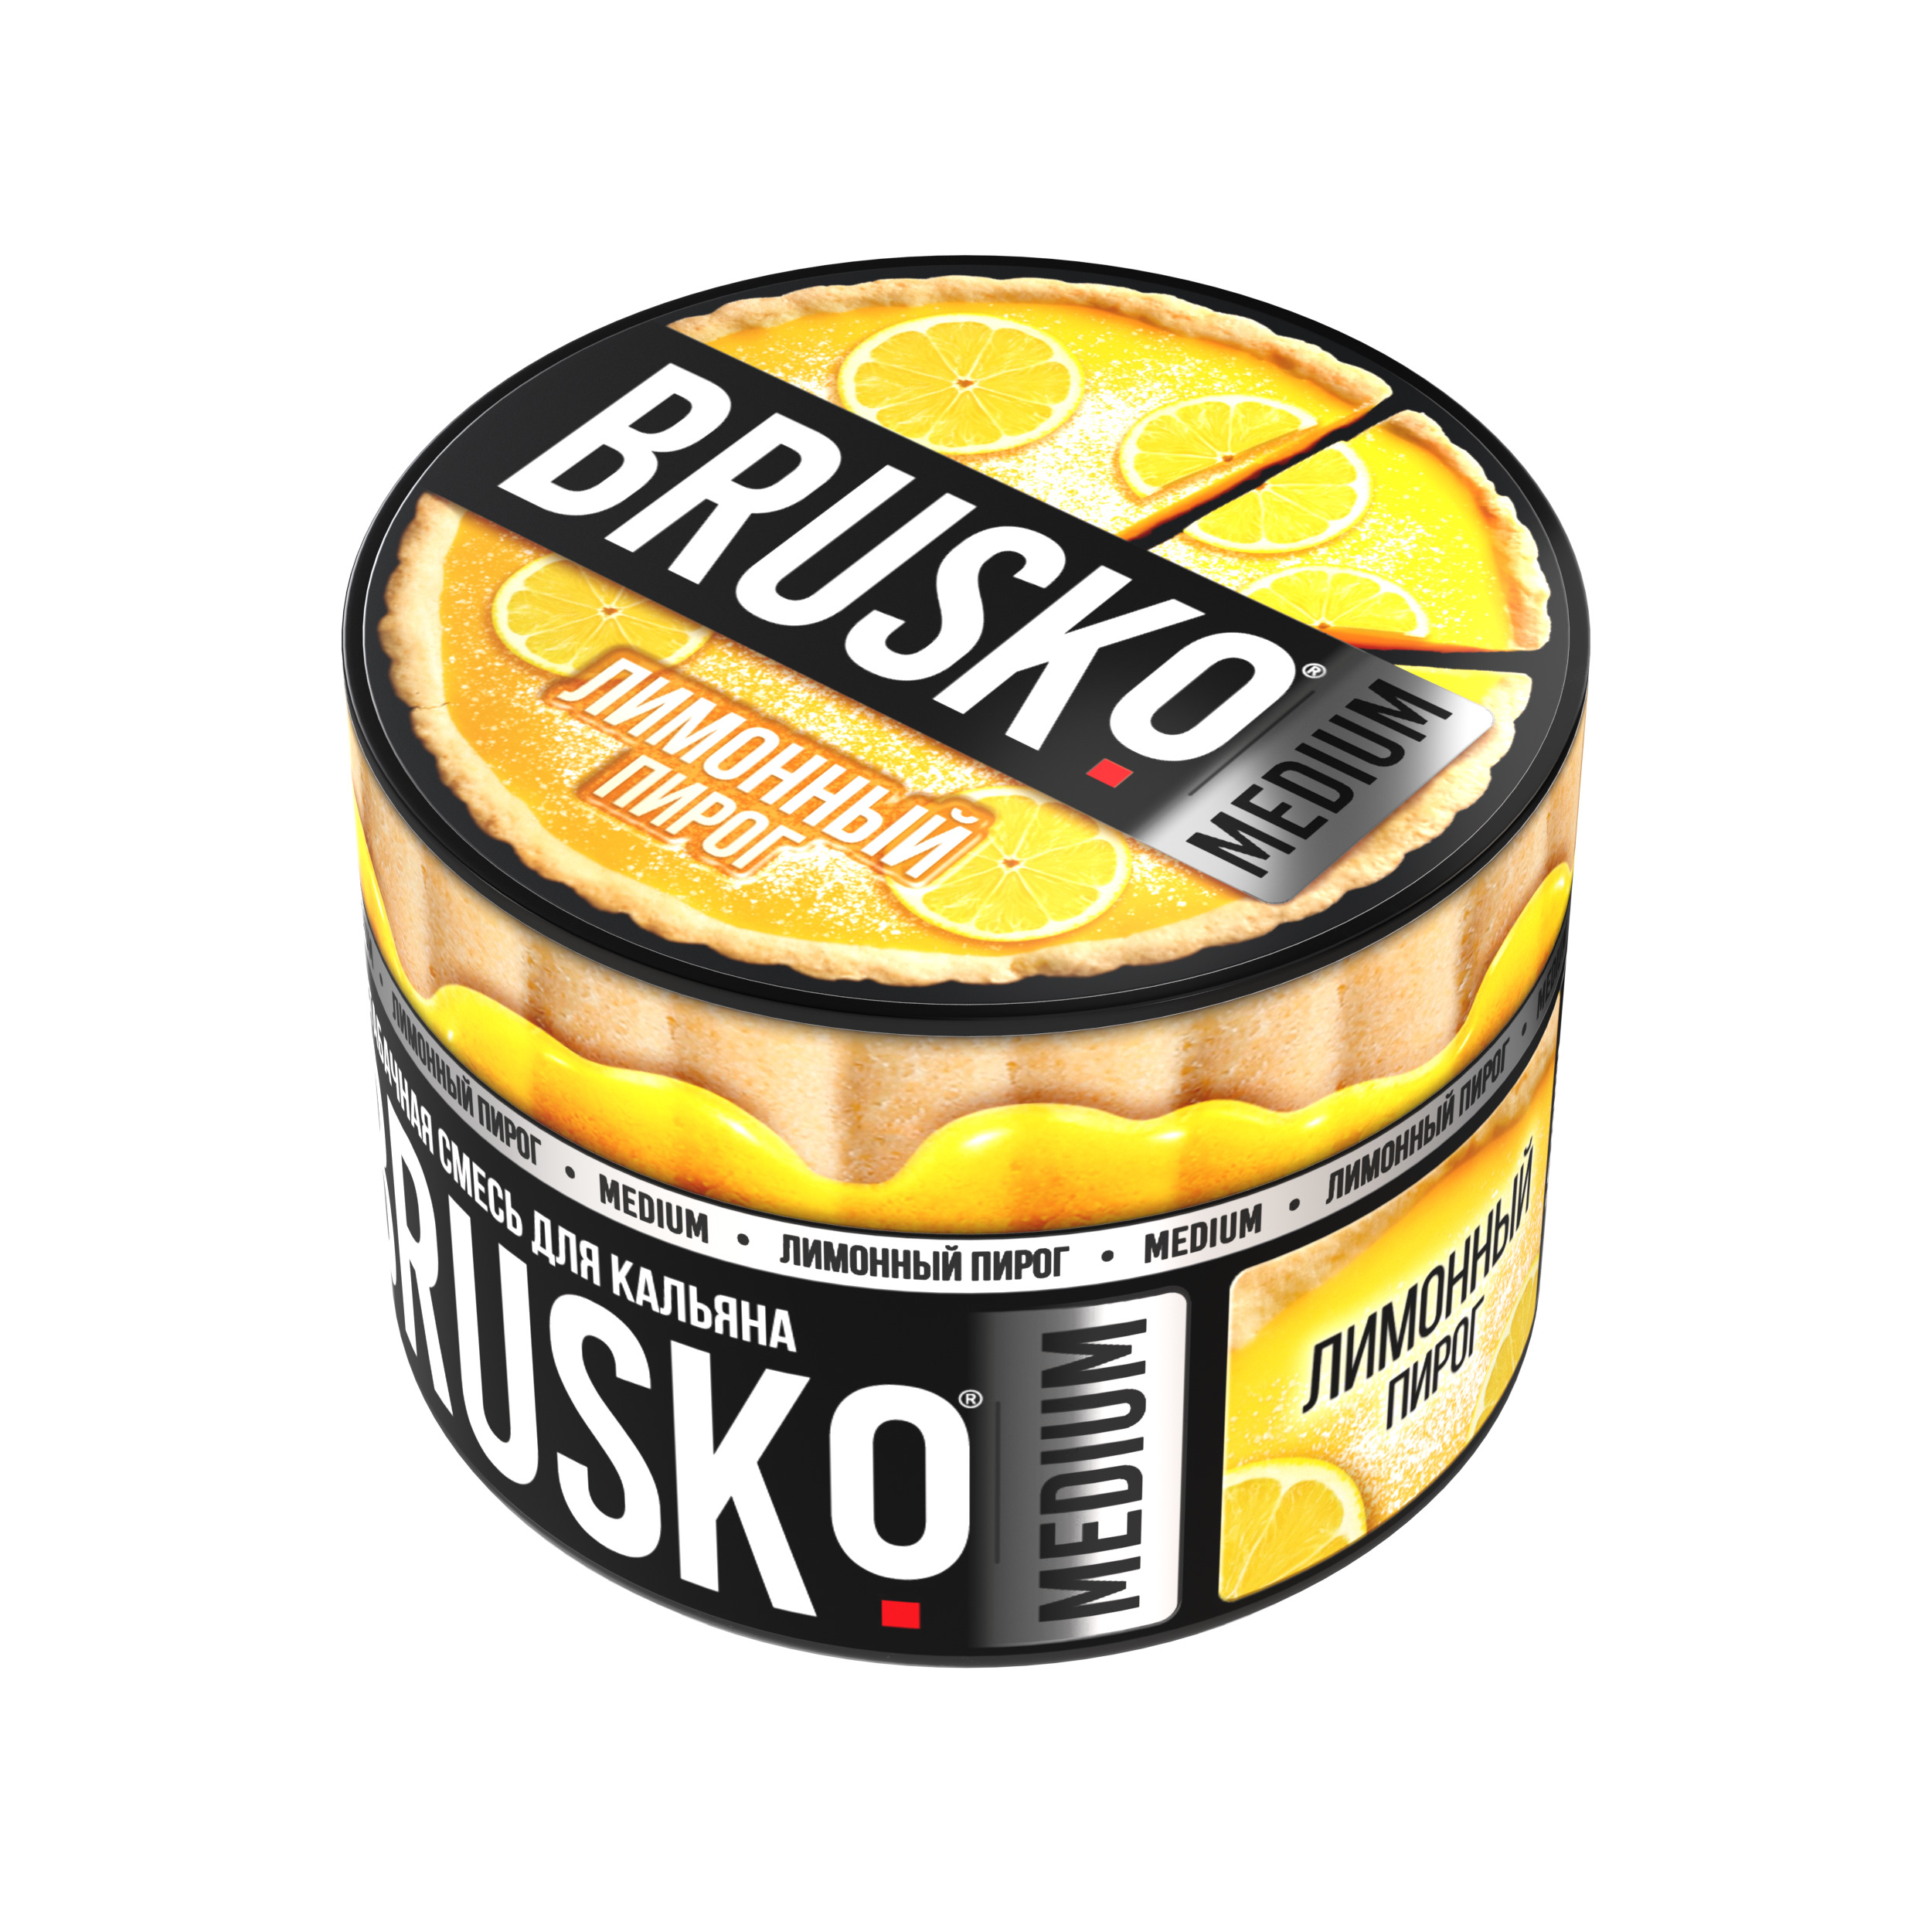 Бестабачная смесь для кальяна BRUSKO, 50 г, Лимонный пирог, Medium